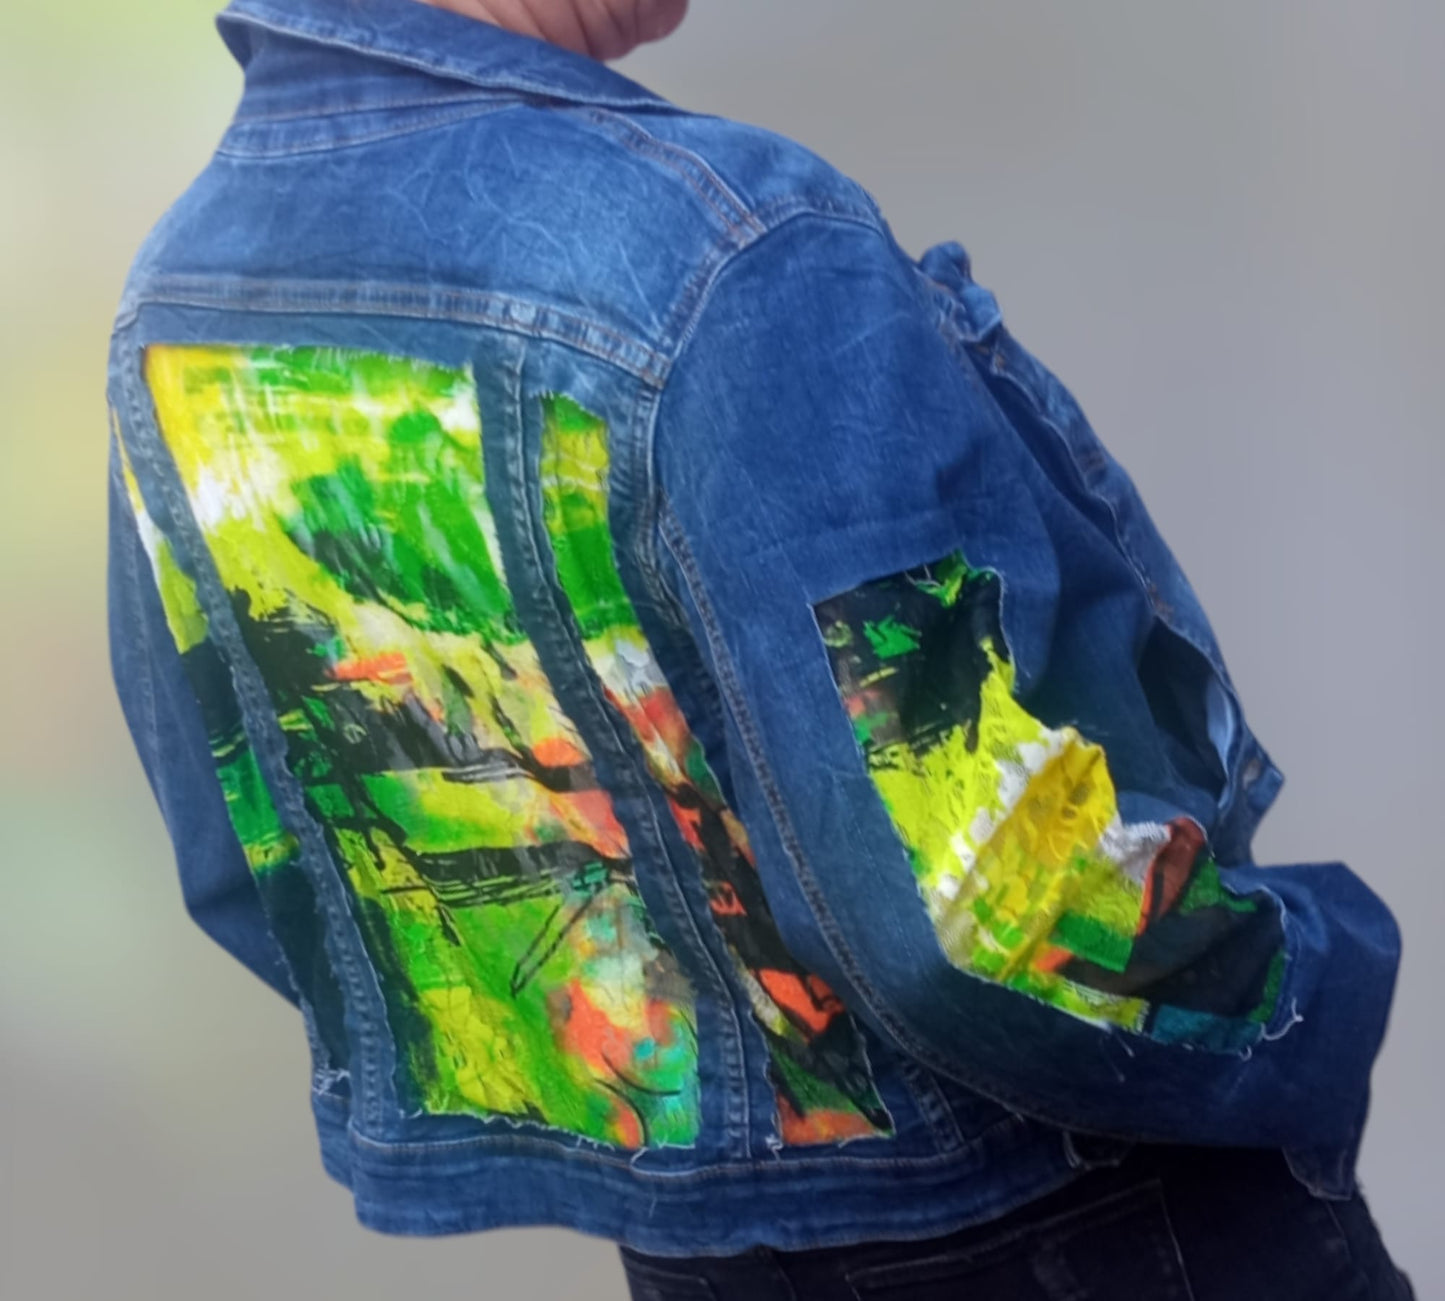 Upcycled denim jacket